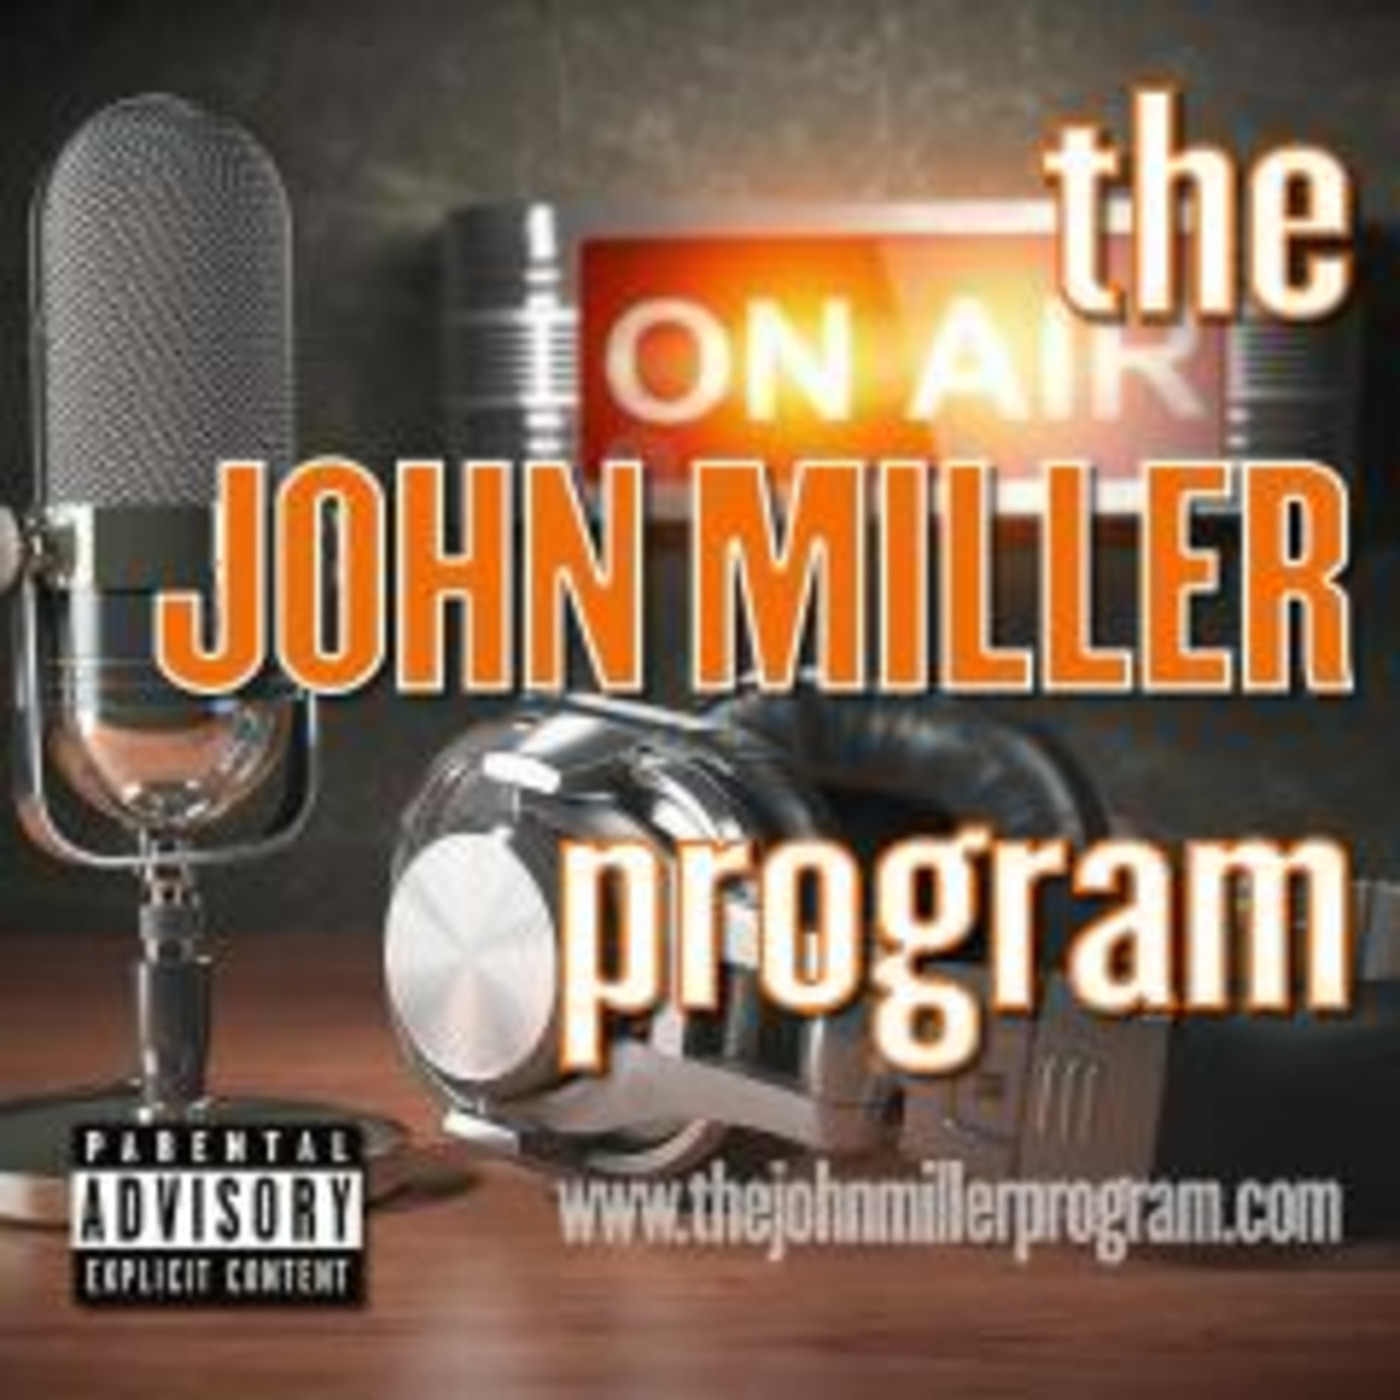 Episode 13: The John Miller Program w/Phil Perrier